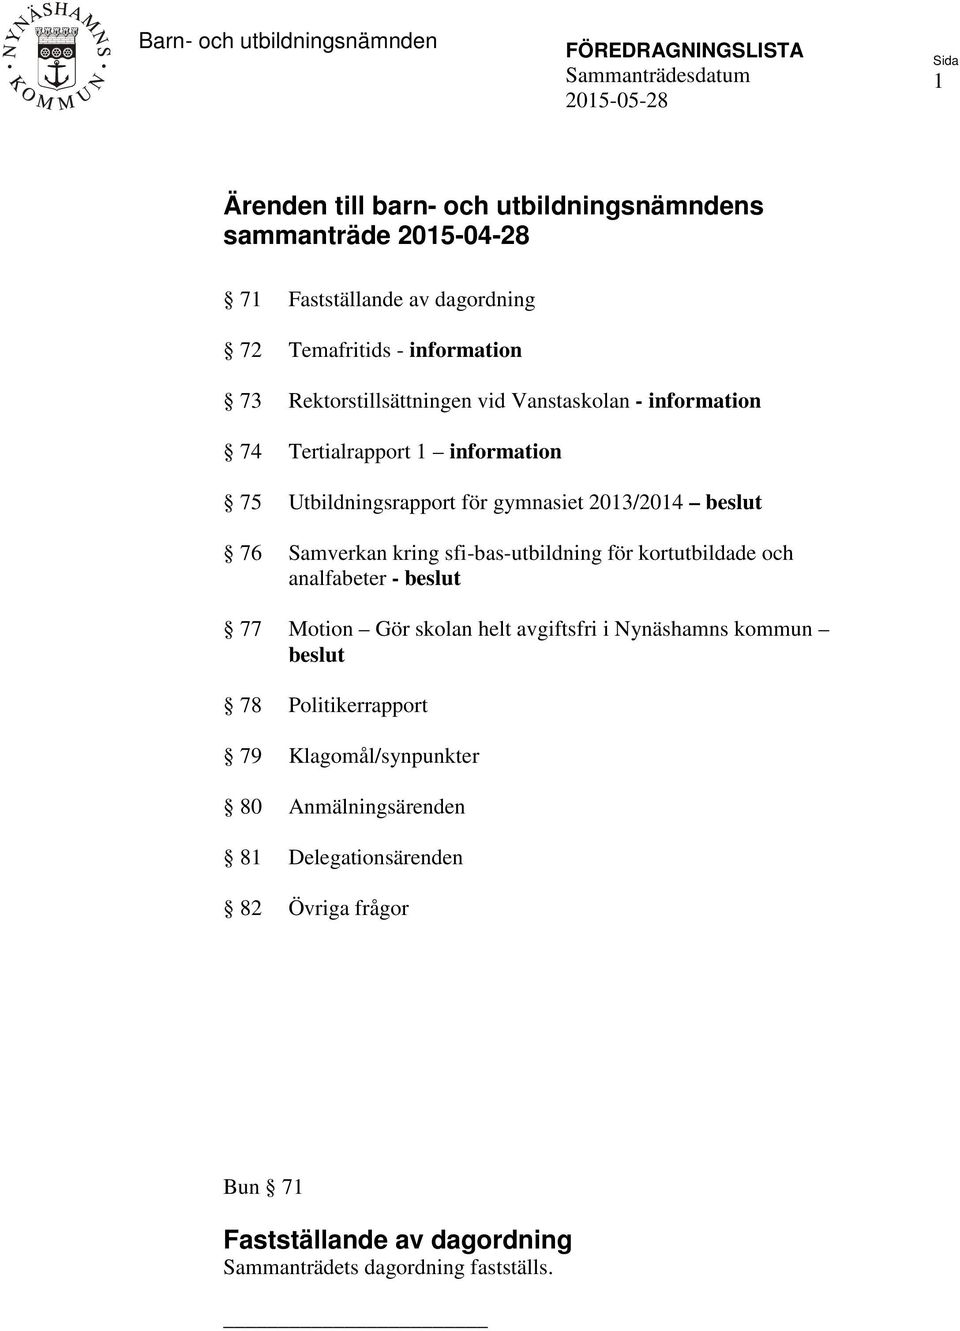 2013/2014 beslut 76 Samverkan kring sfi-bas-utbildning för kortutbildade och analfabeter - beslut 77 Motion Gör skolan helt avgiftsfri i Nynäshamns kommun beslut 78